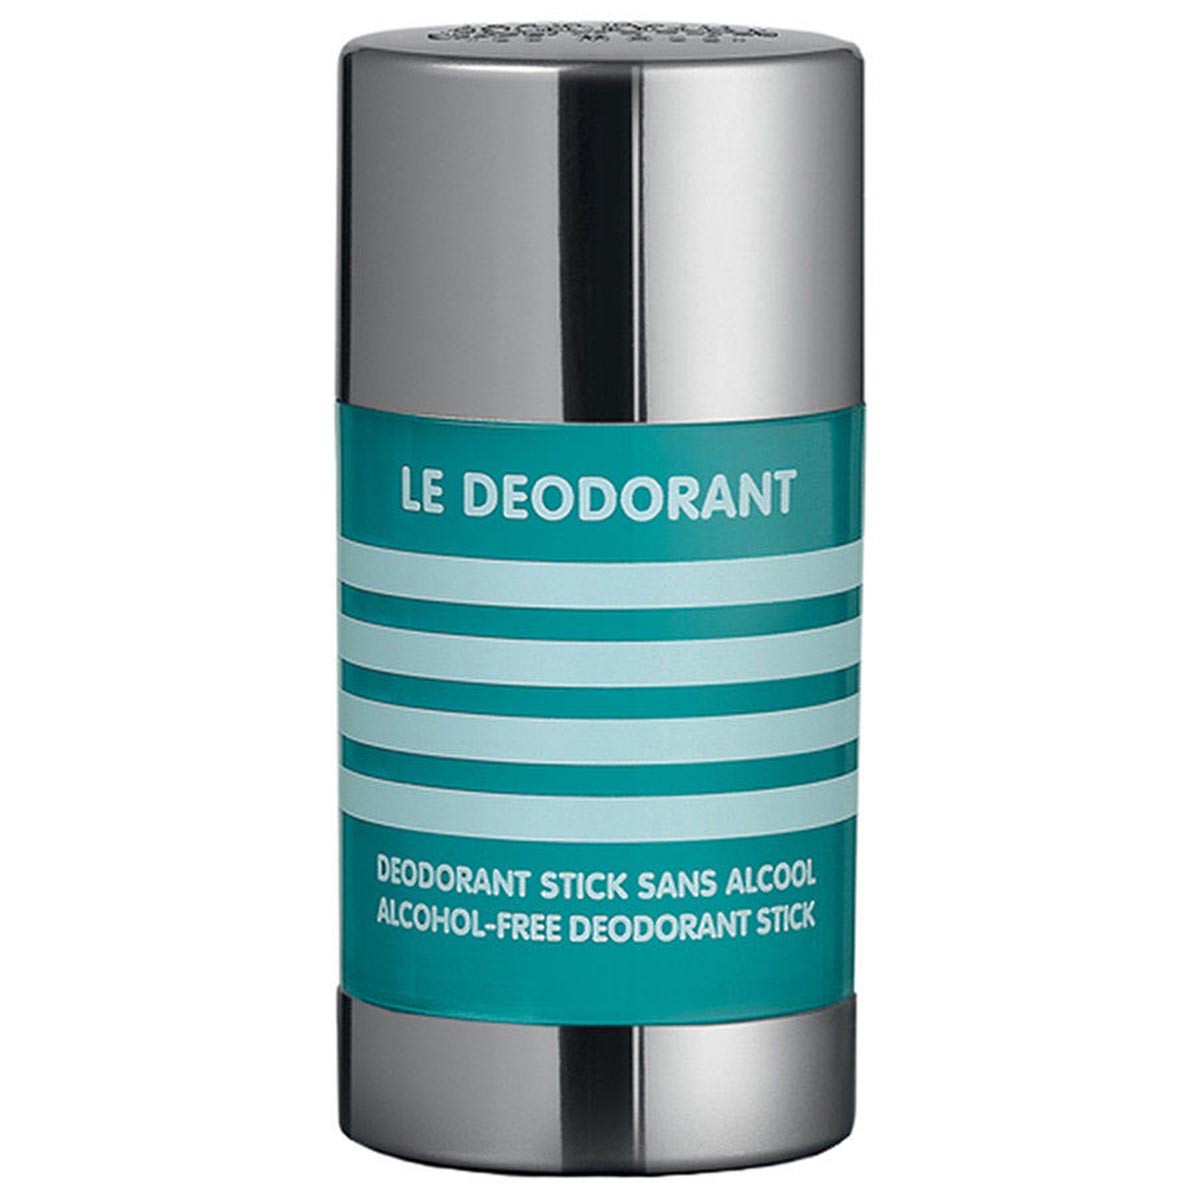 Jean paul gaultier roll on deodorant